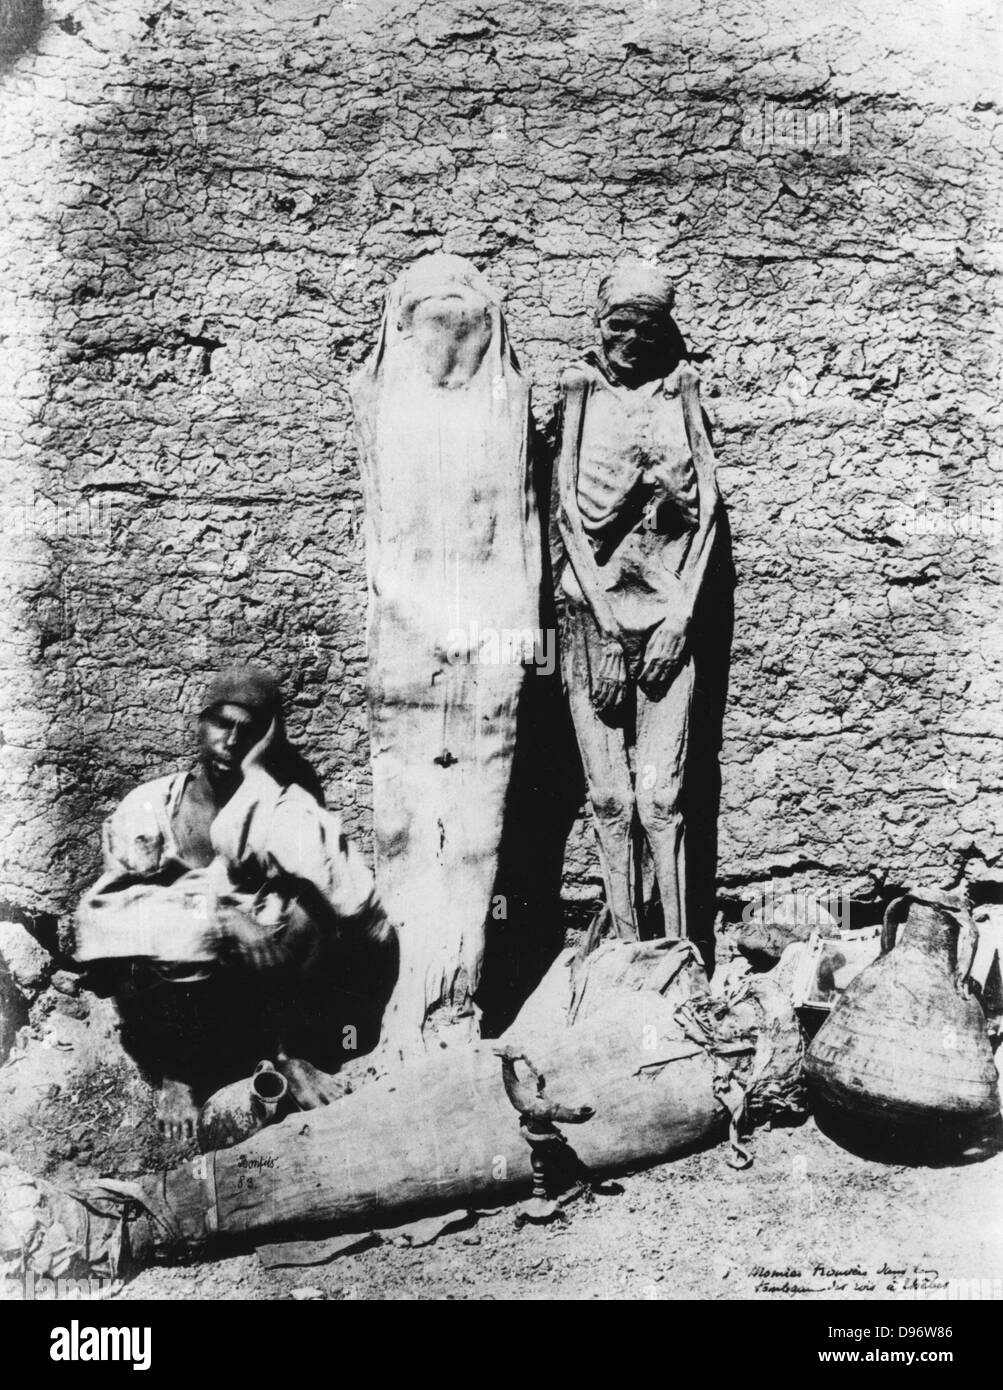 Alte ägyptische Mumien, 1860. Mumien vor einem Grab in Theben angezeigt. Bibliotheque Nationale, Paris. Foto Stockfoto